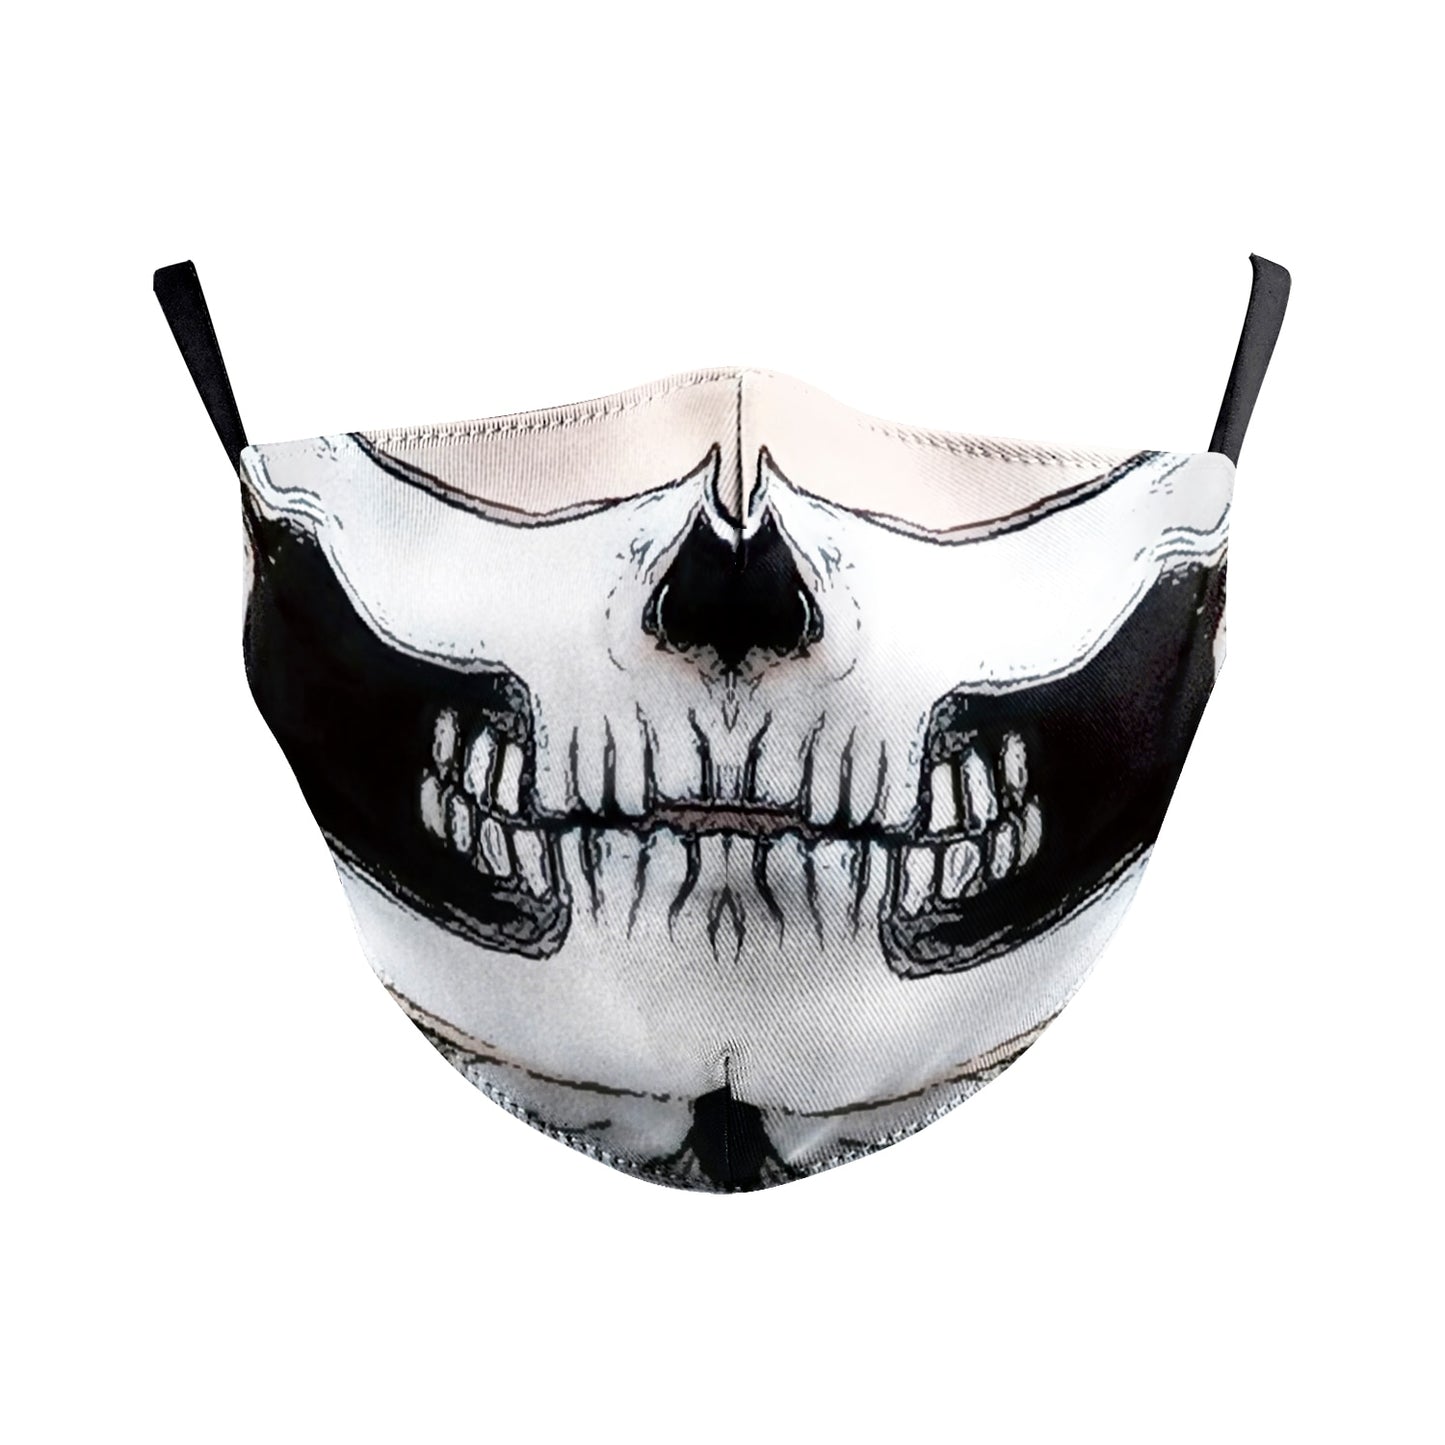 Masques de Protection réutilisables - iONiQ SHOP